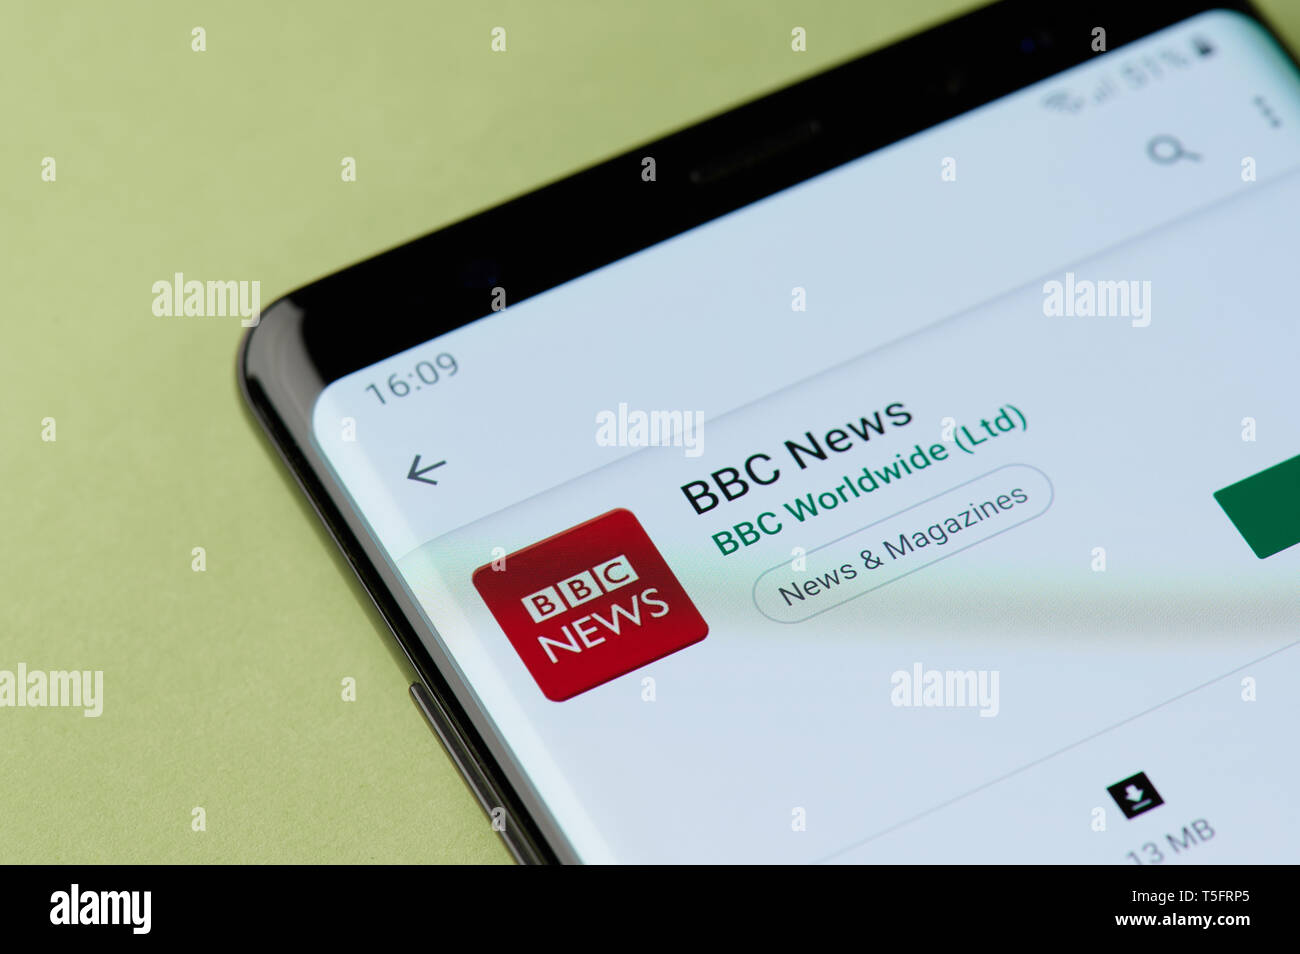 Nueva York, Estados Unidos - 22 de abril de 2019: Instalación de BBC News al smartphone app desde google market Foto de stock